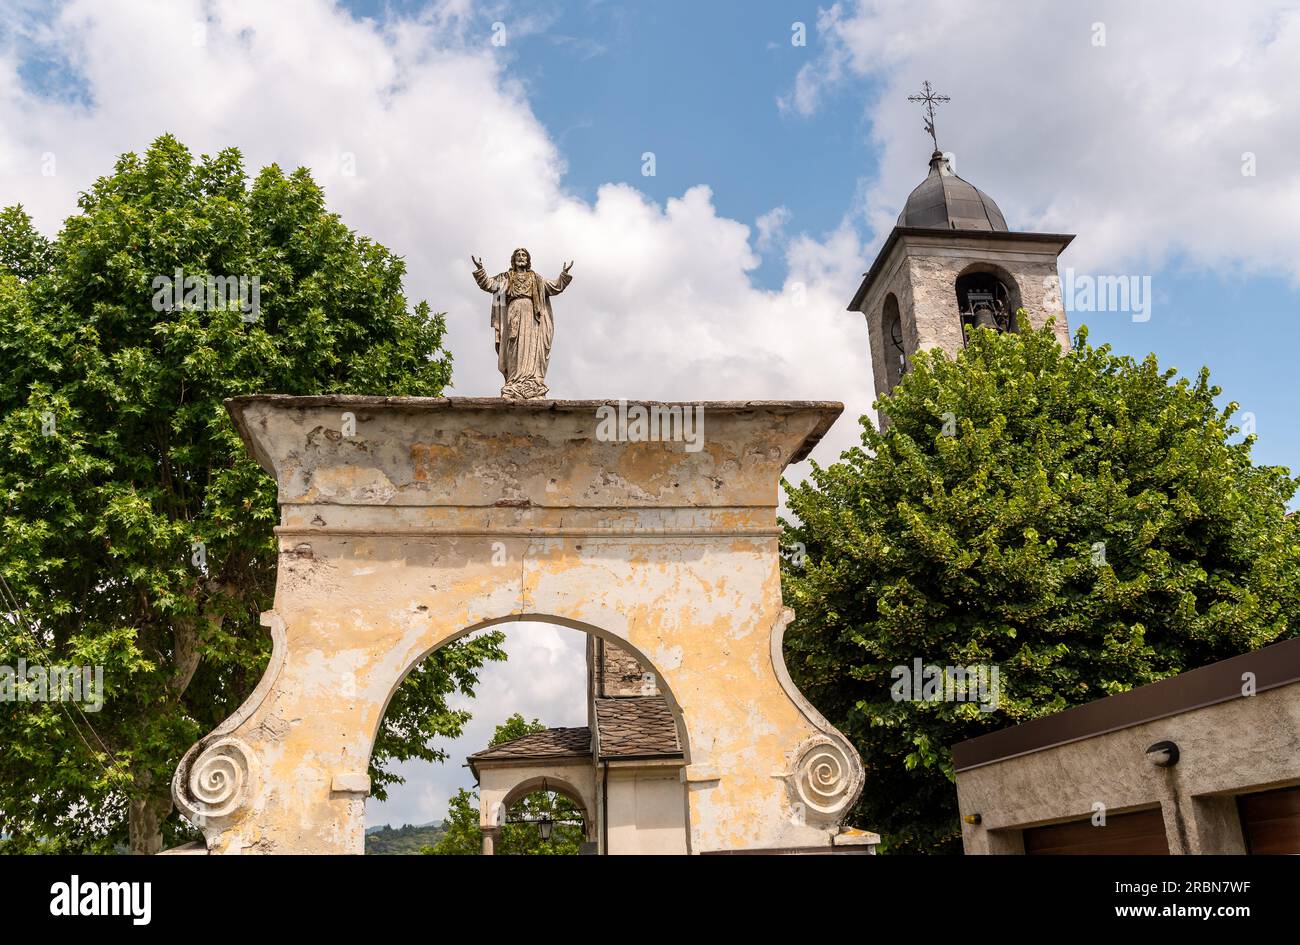 Arco di ingresso all'antica chiesa parrocchiale di San Martino nel parco di Oleggio Castello, provincia di Novara, Piemonte, Italia Foto Stock